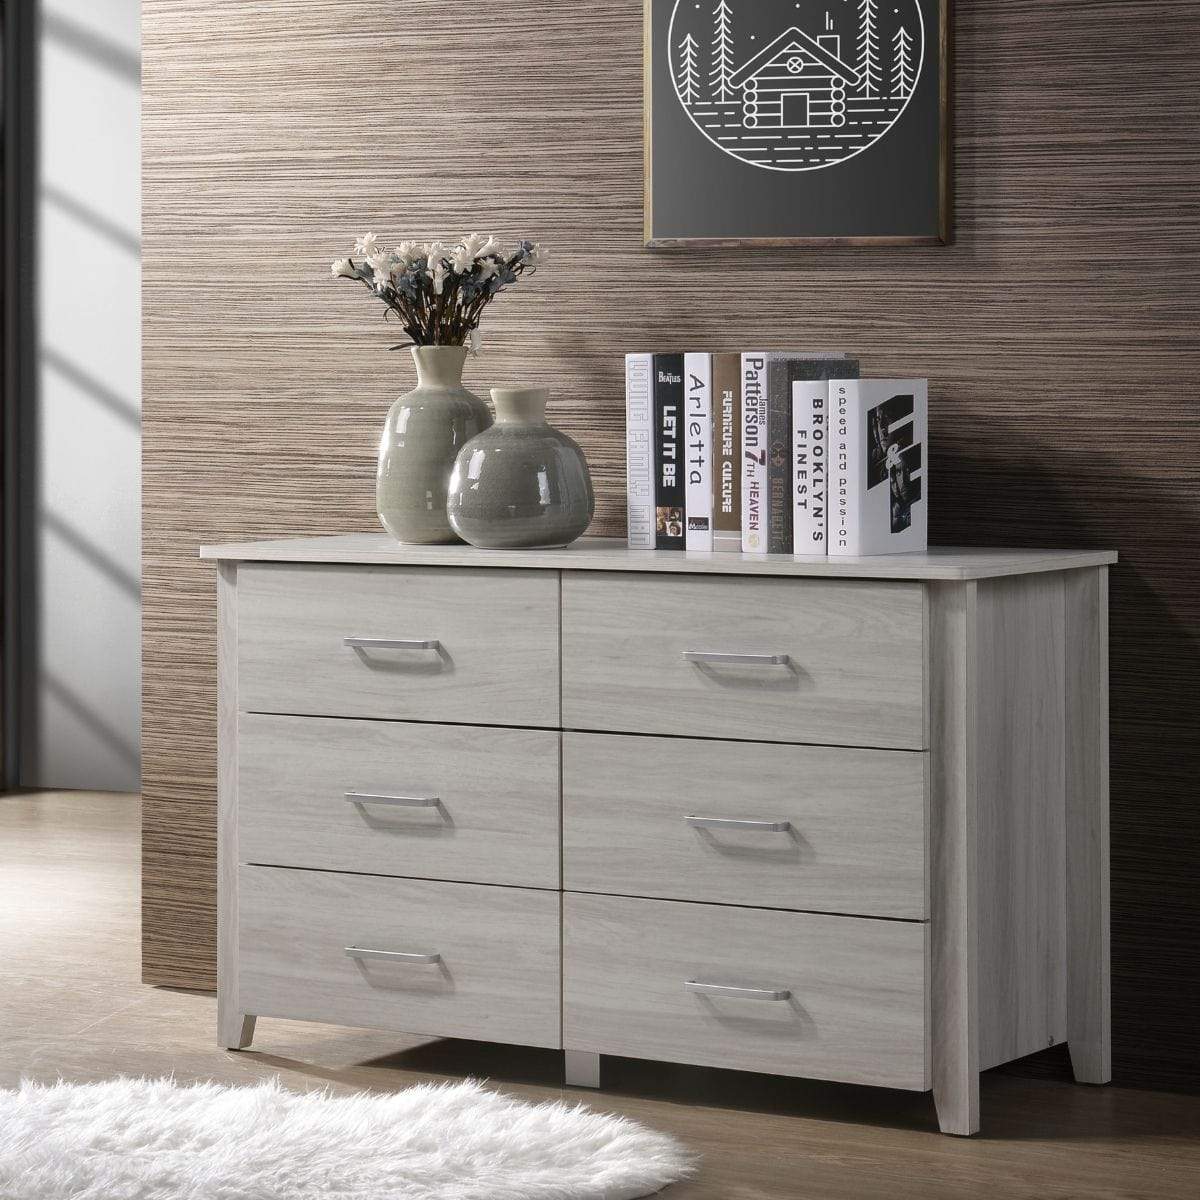 White 6 Chest of Drawers Bedroom Cabinet Storage Tallboy Dresser - Newstart Furniture